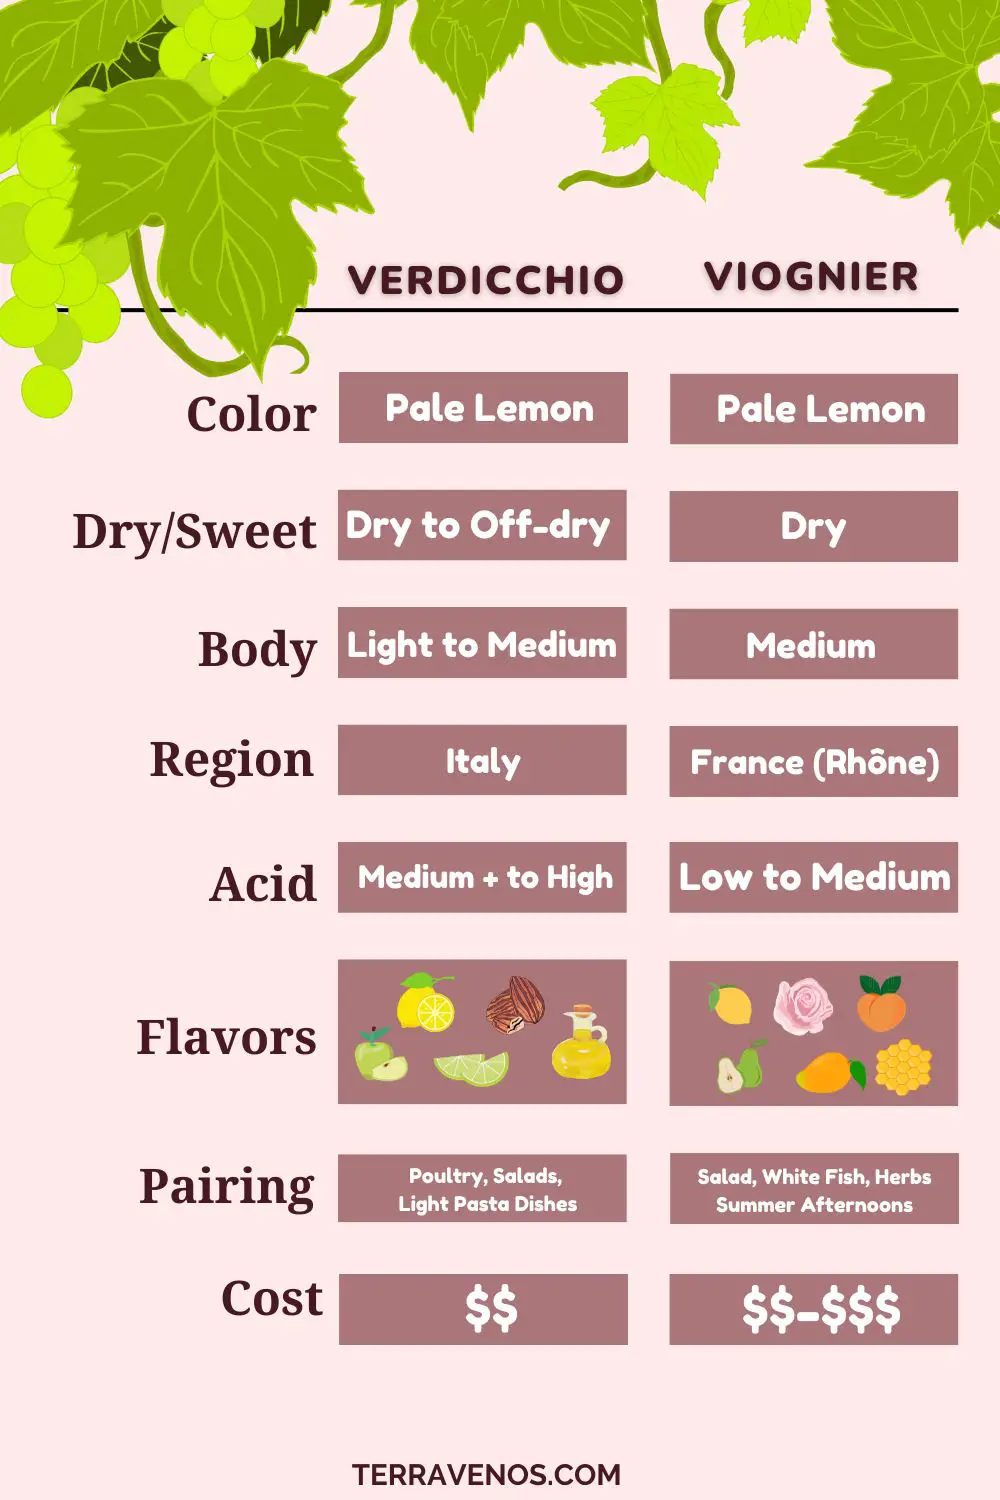 verdicchio-vs-viognier-wine-comparison-infographic